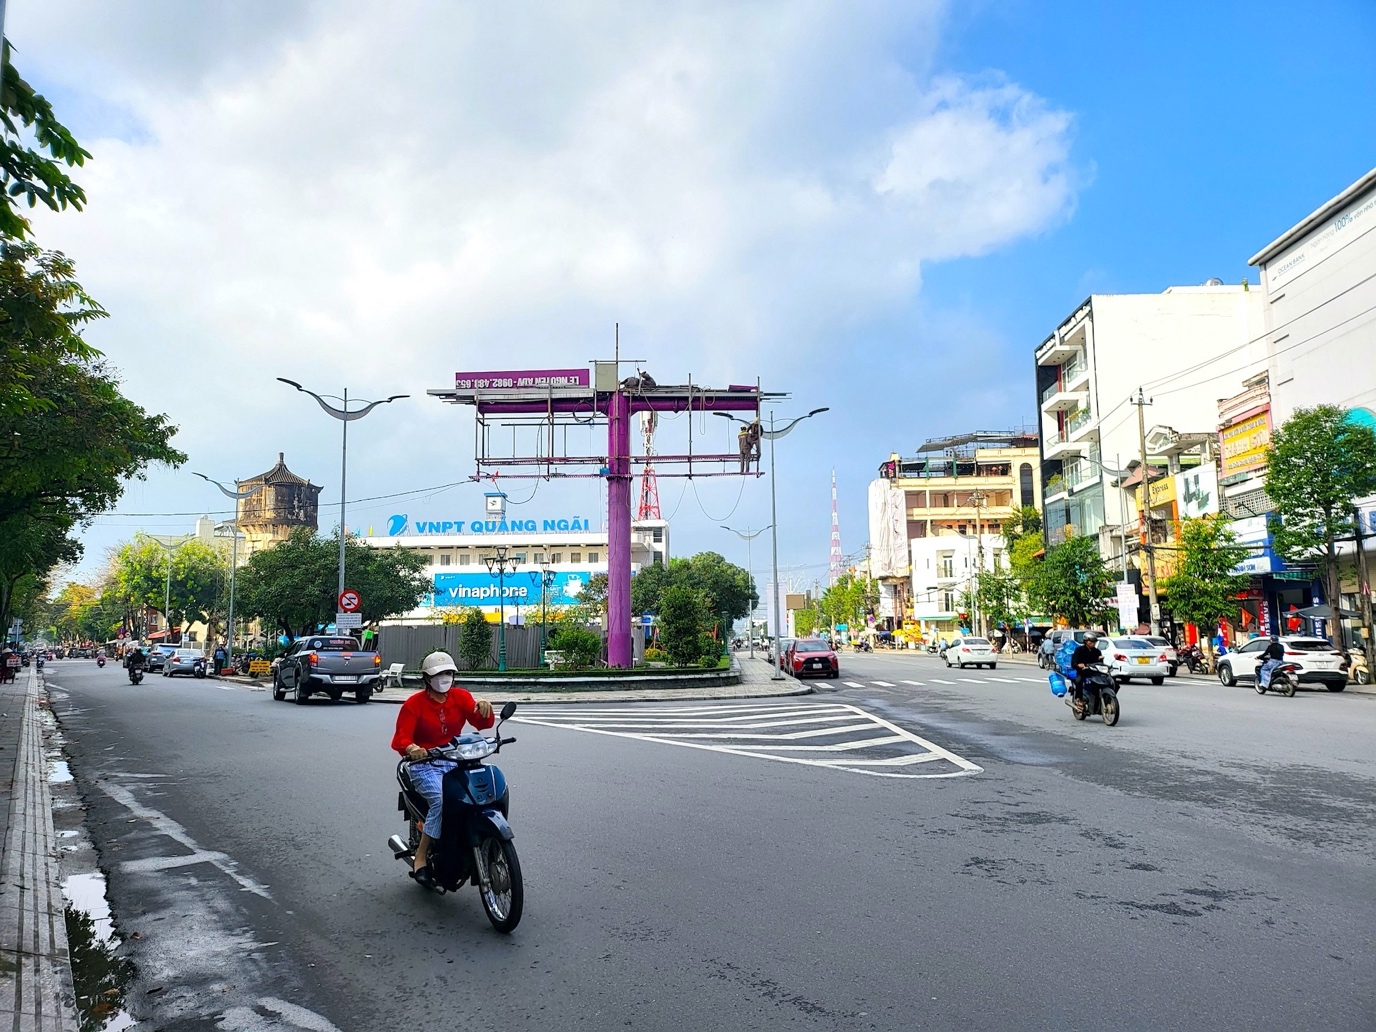 Thành phố Quảng Ngãi đi lùi trong cải cách hành chính